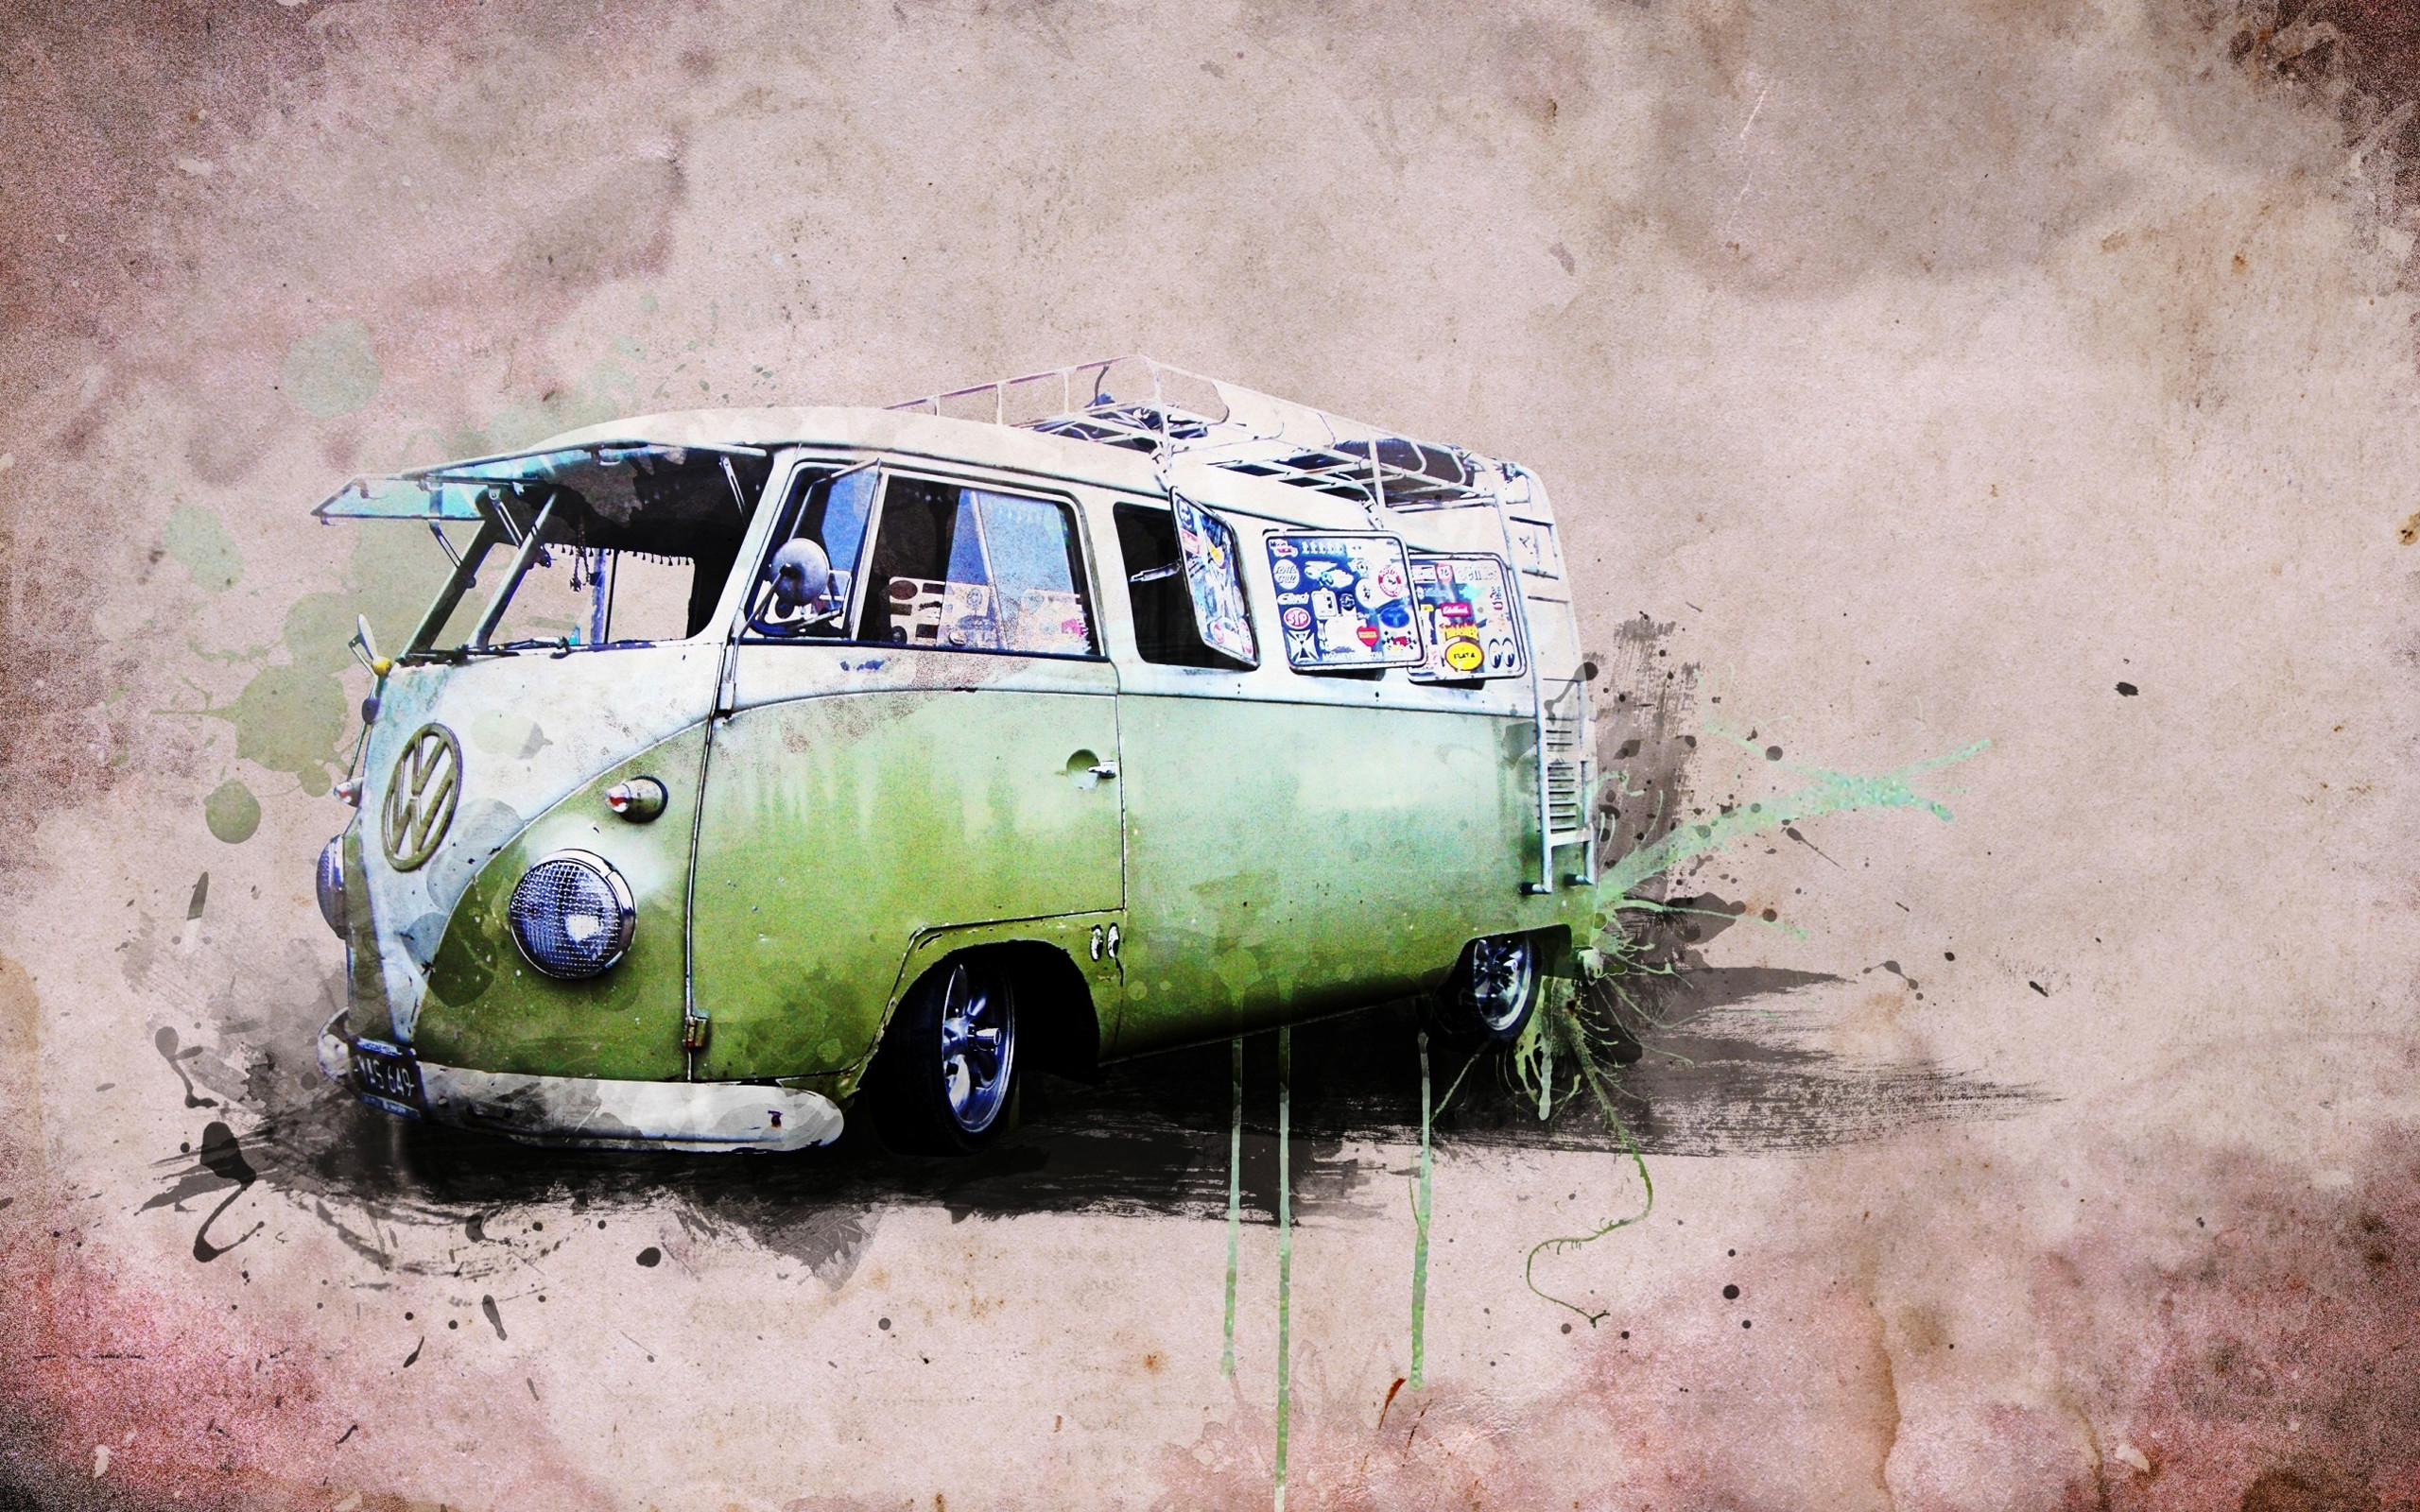 2560x1600 green-vw-volkswagen-combi-van-bus-wallpaper-.jpg (2560Ã1600) |  green | Pinterest | Volkswagen, Volkswagen bus and Vw volkswagen